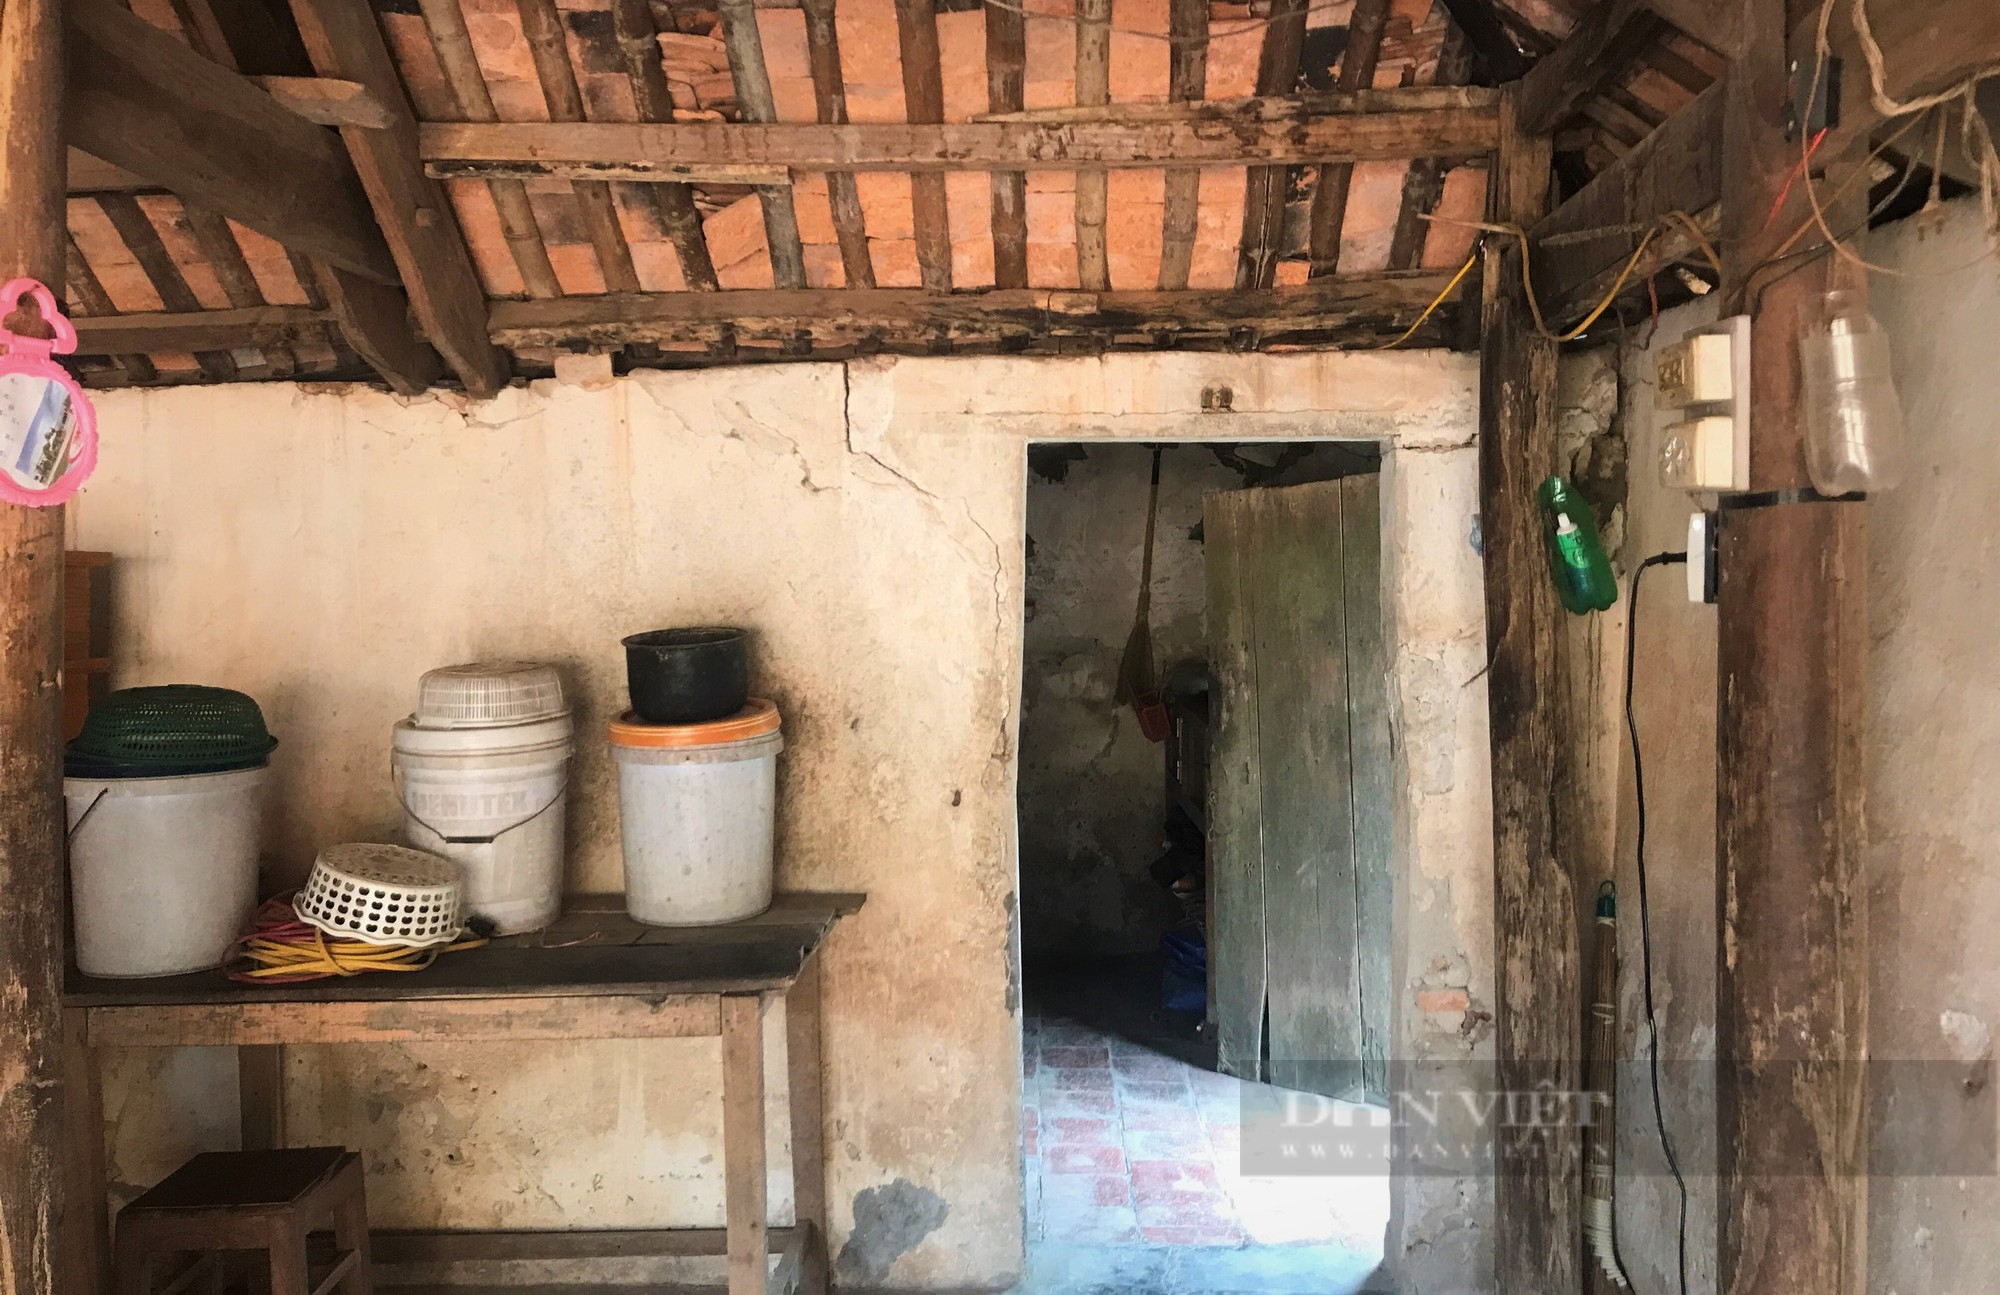 Cụ bà sống lay lắt trong căn nhà dọa sập được bạn đọc Dân Việt giúp đỡ xây dựng một ngôi nhà mới - Ảnh 5.